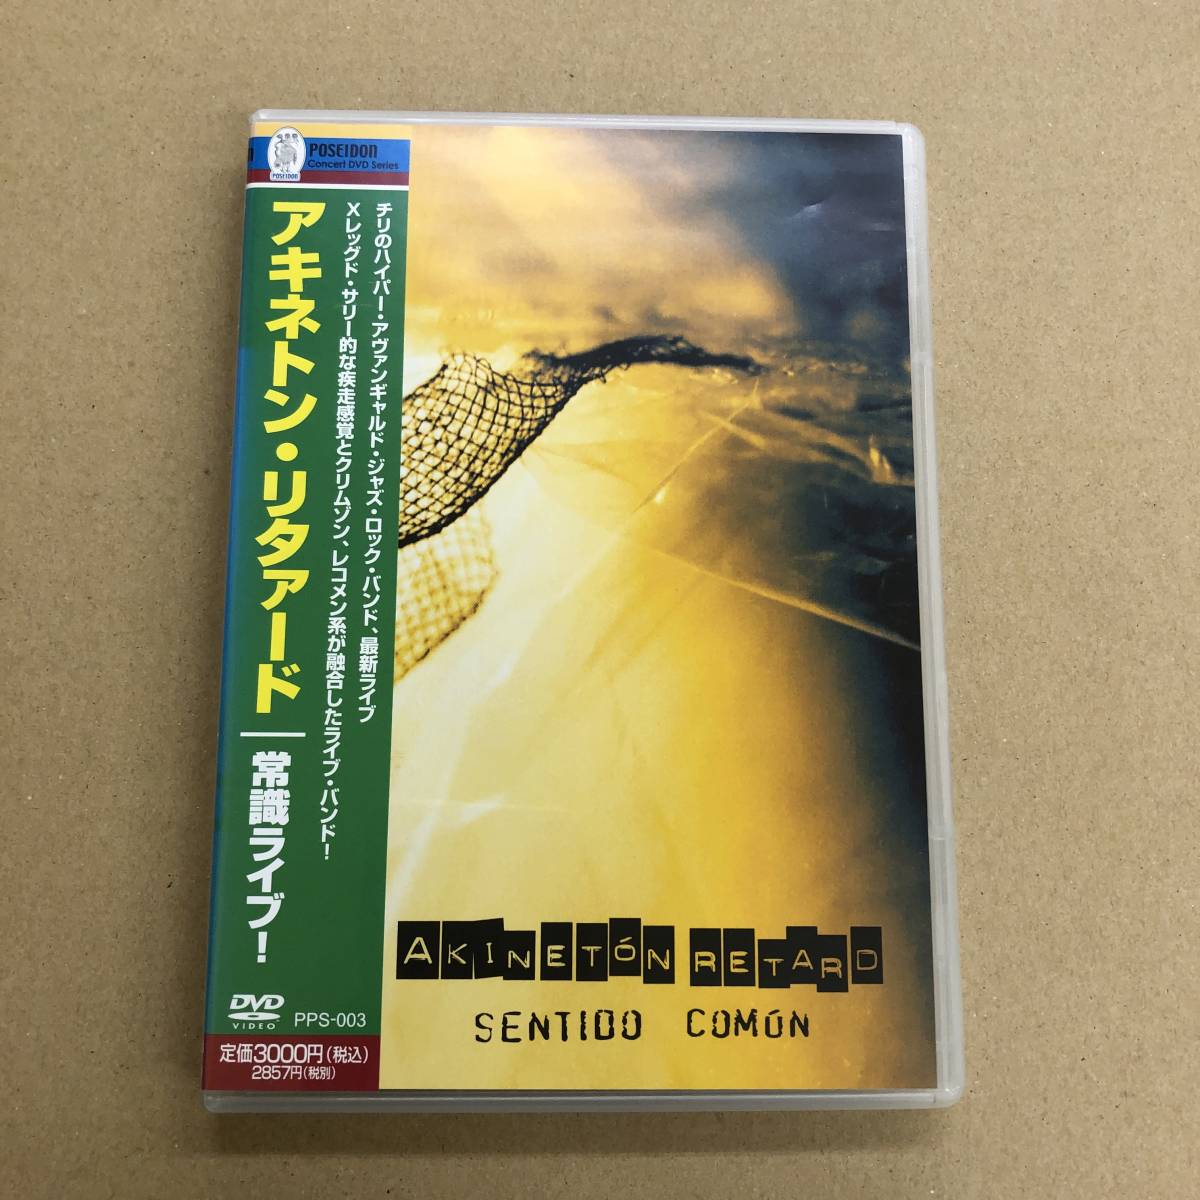 (DVD) Akineton Retard - Sentido Comun［PPS-003］帯付 アキネトン・リタァード - 常識ライヴ ジャズ・ロック_画像1